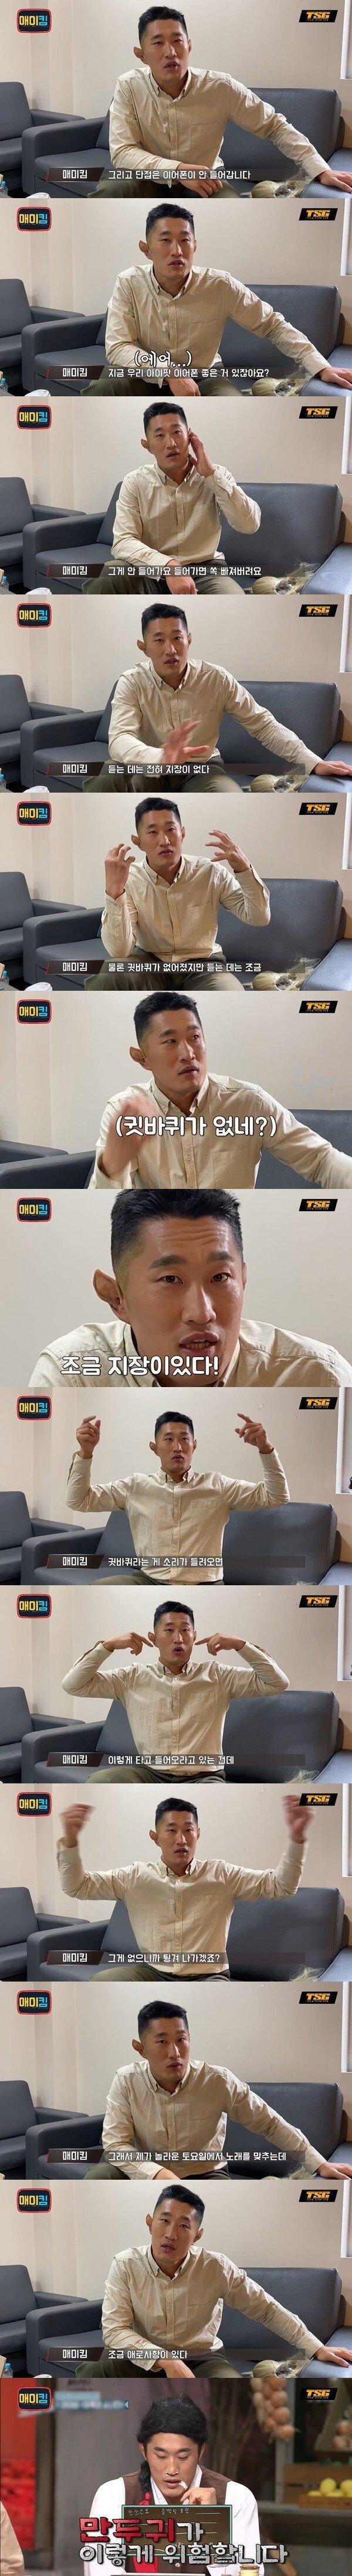 김동현이 말하는 만두귀 불편한 점 - 꾸르